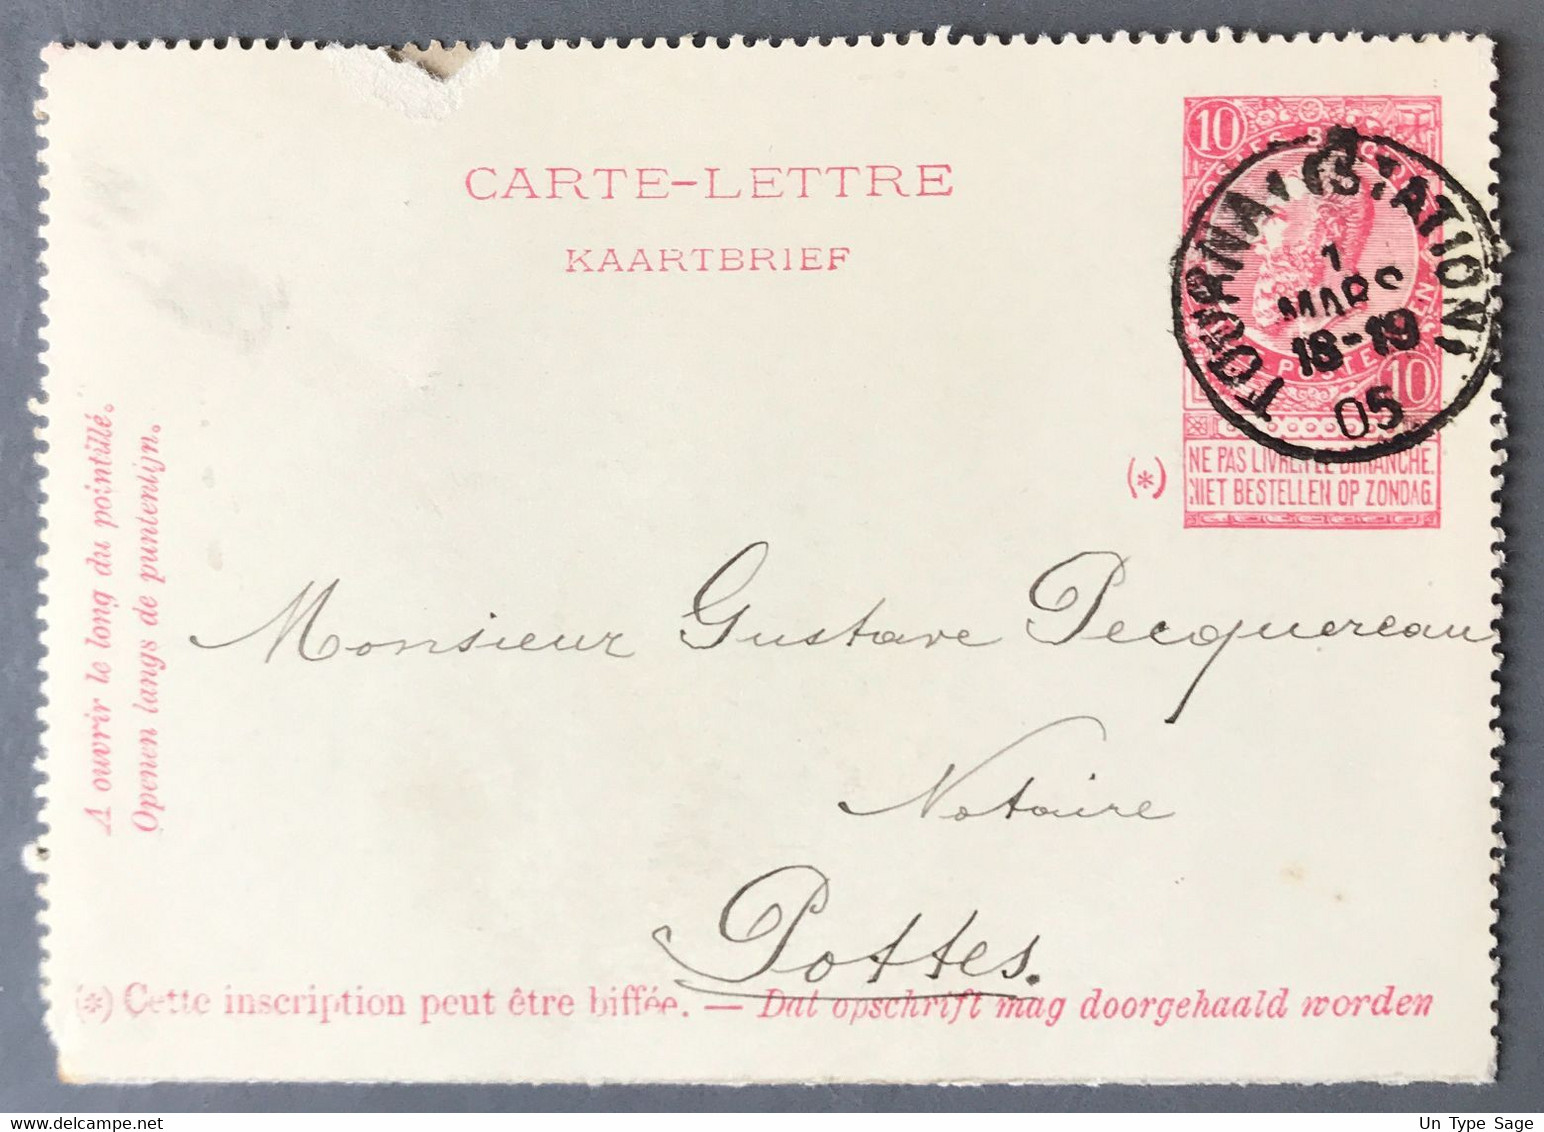 Belgique Entier Type N°58 - Cachet TOURNAI (STATION) DEPART 1.3.1905 - (A409) - Carte-Lettere